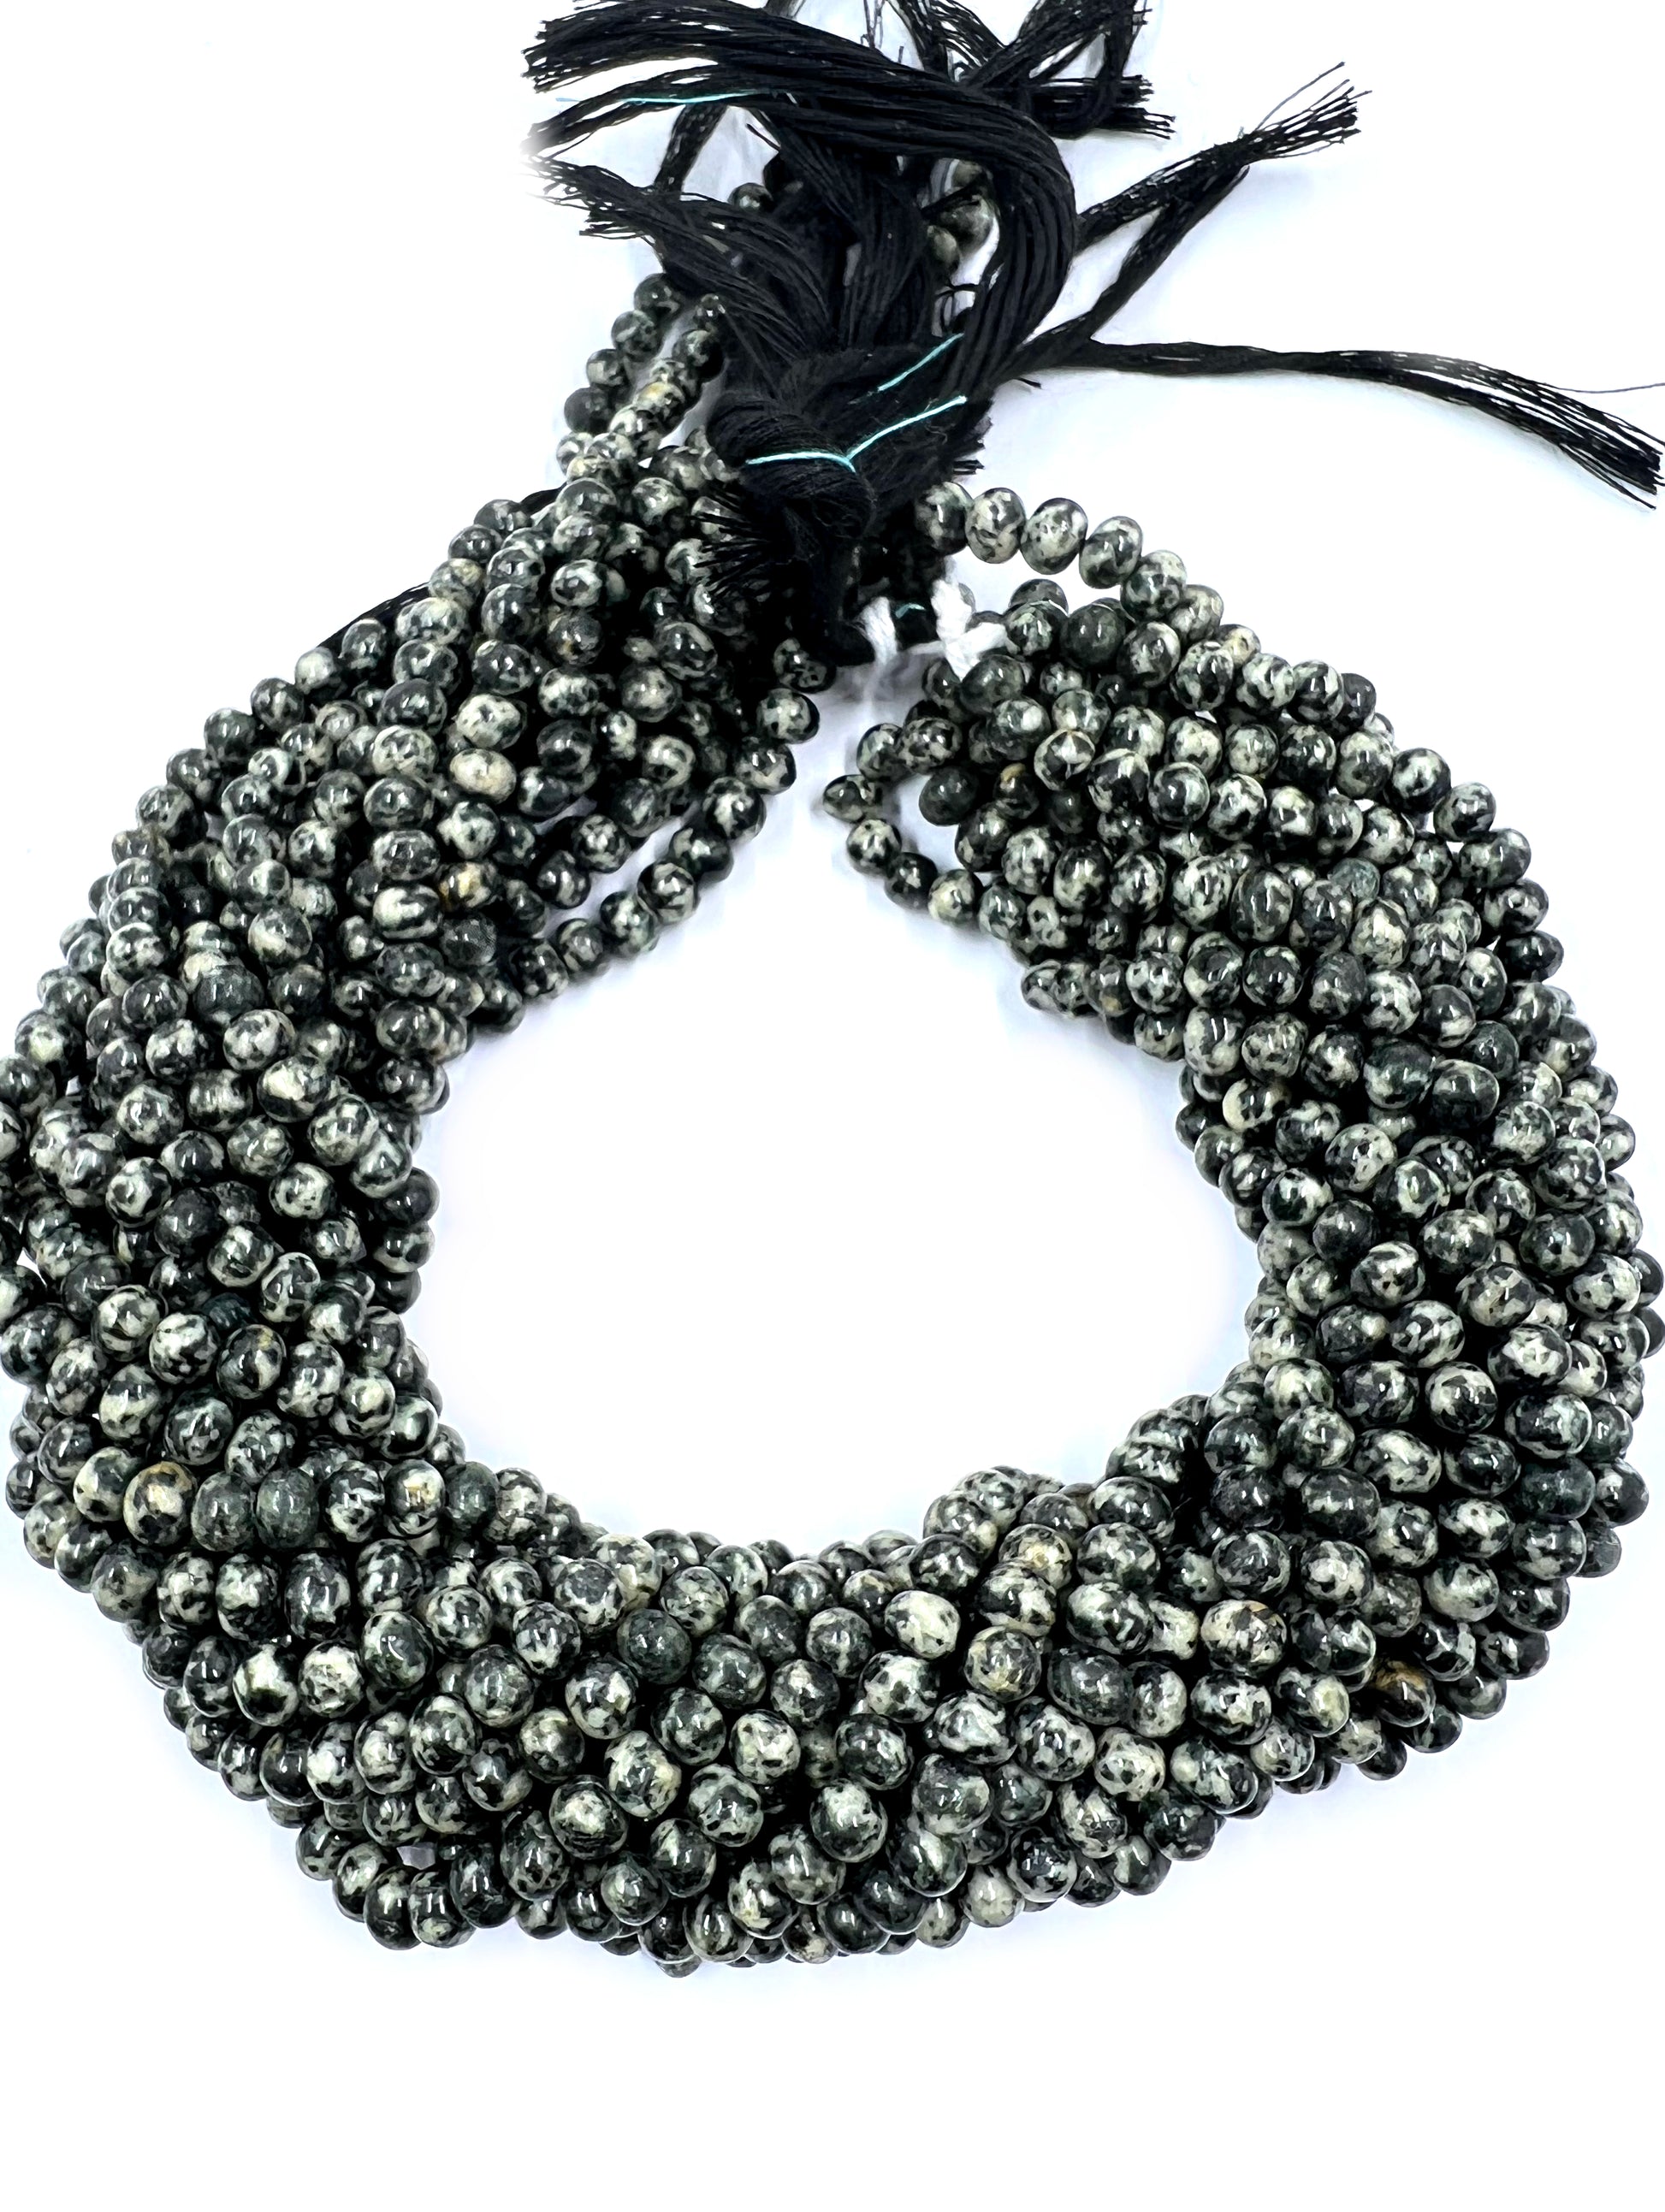 White Black Dot Rondelle Beads